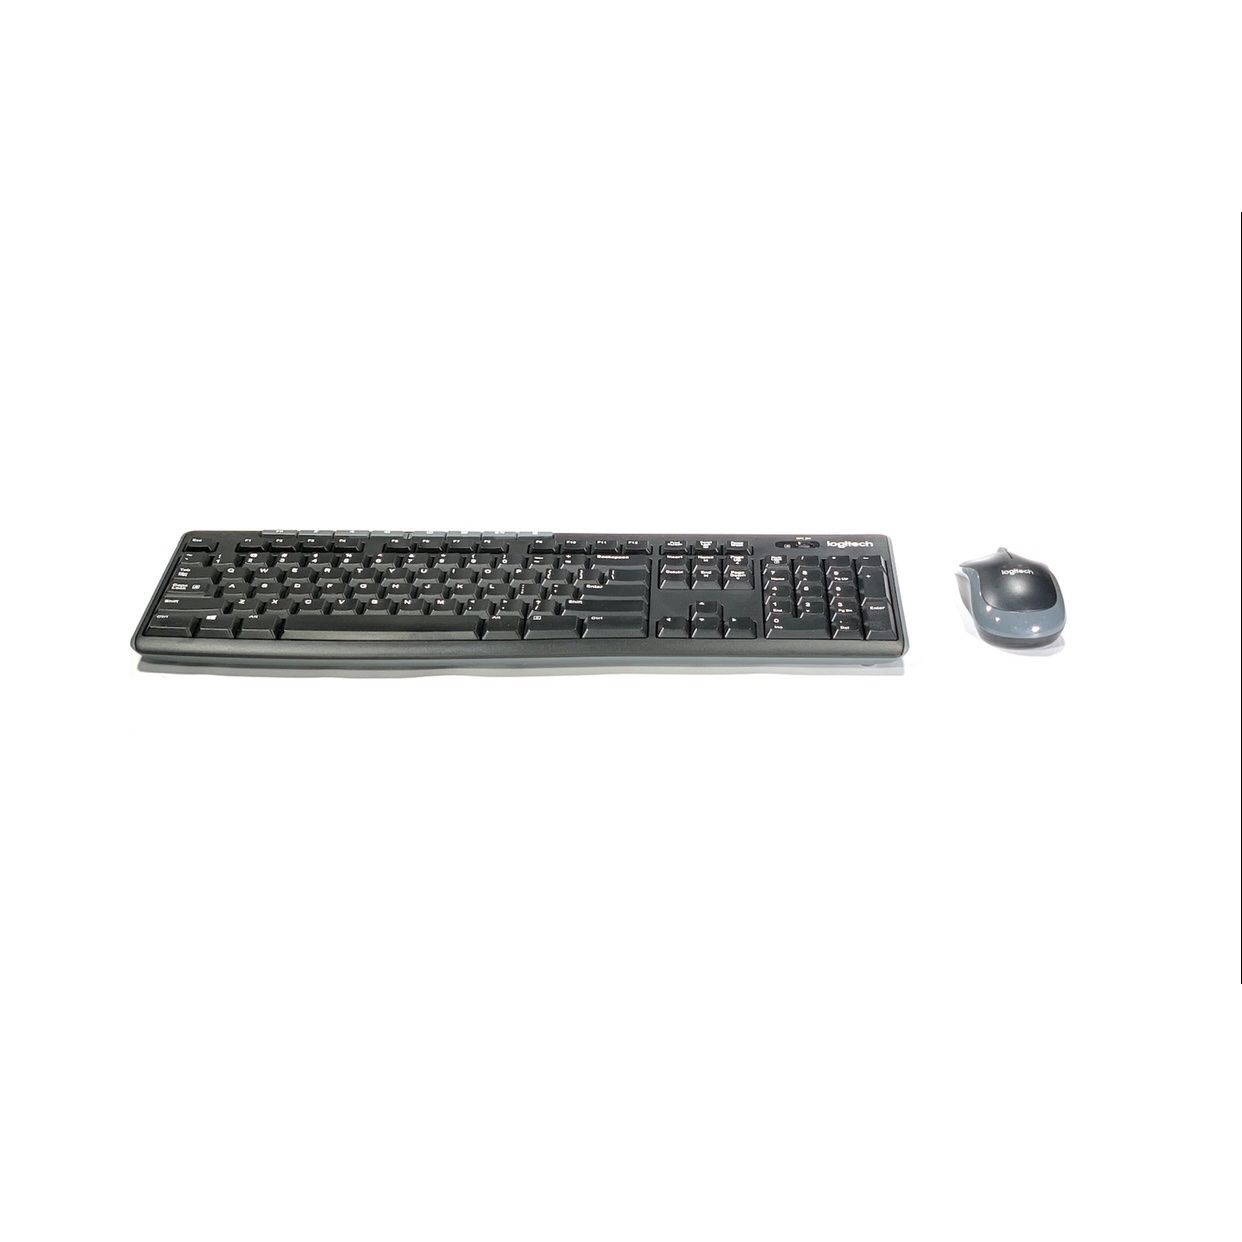 Logitech Wireless Keyboard and Mouse